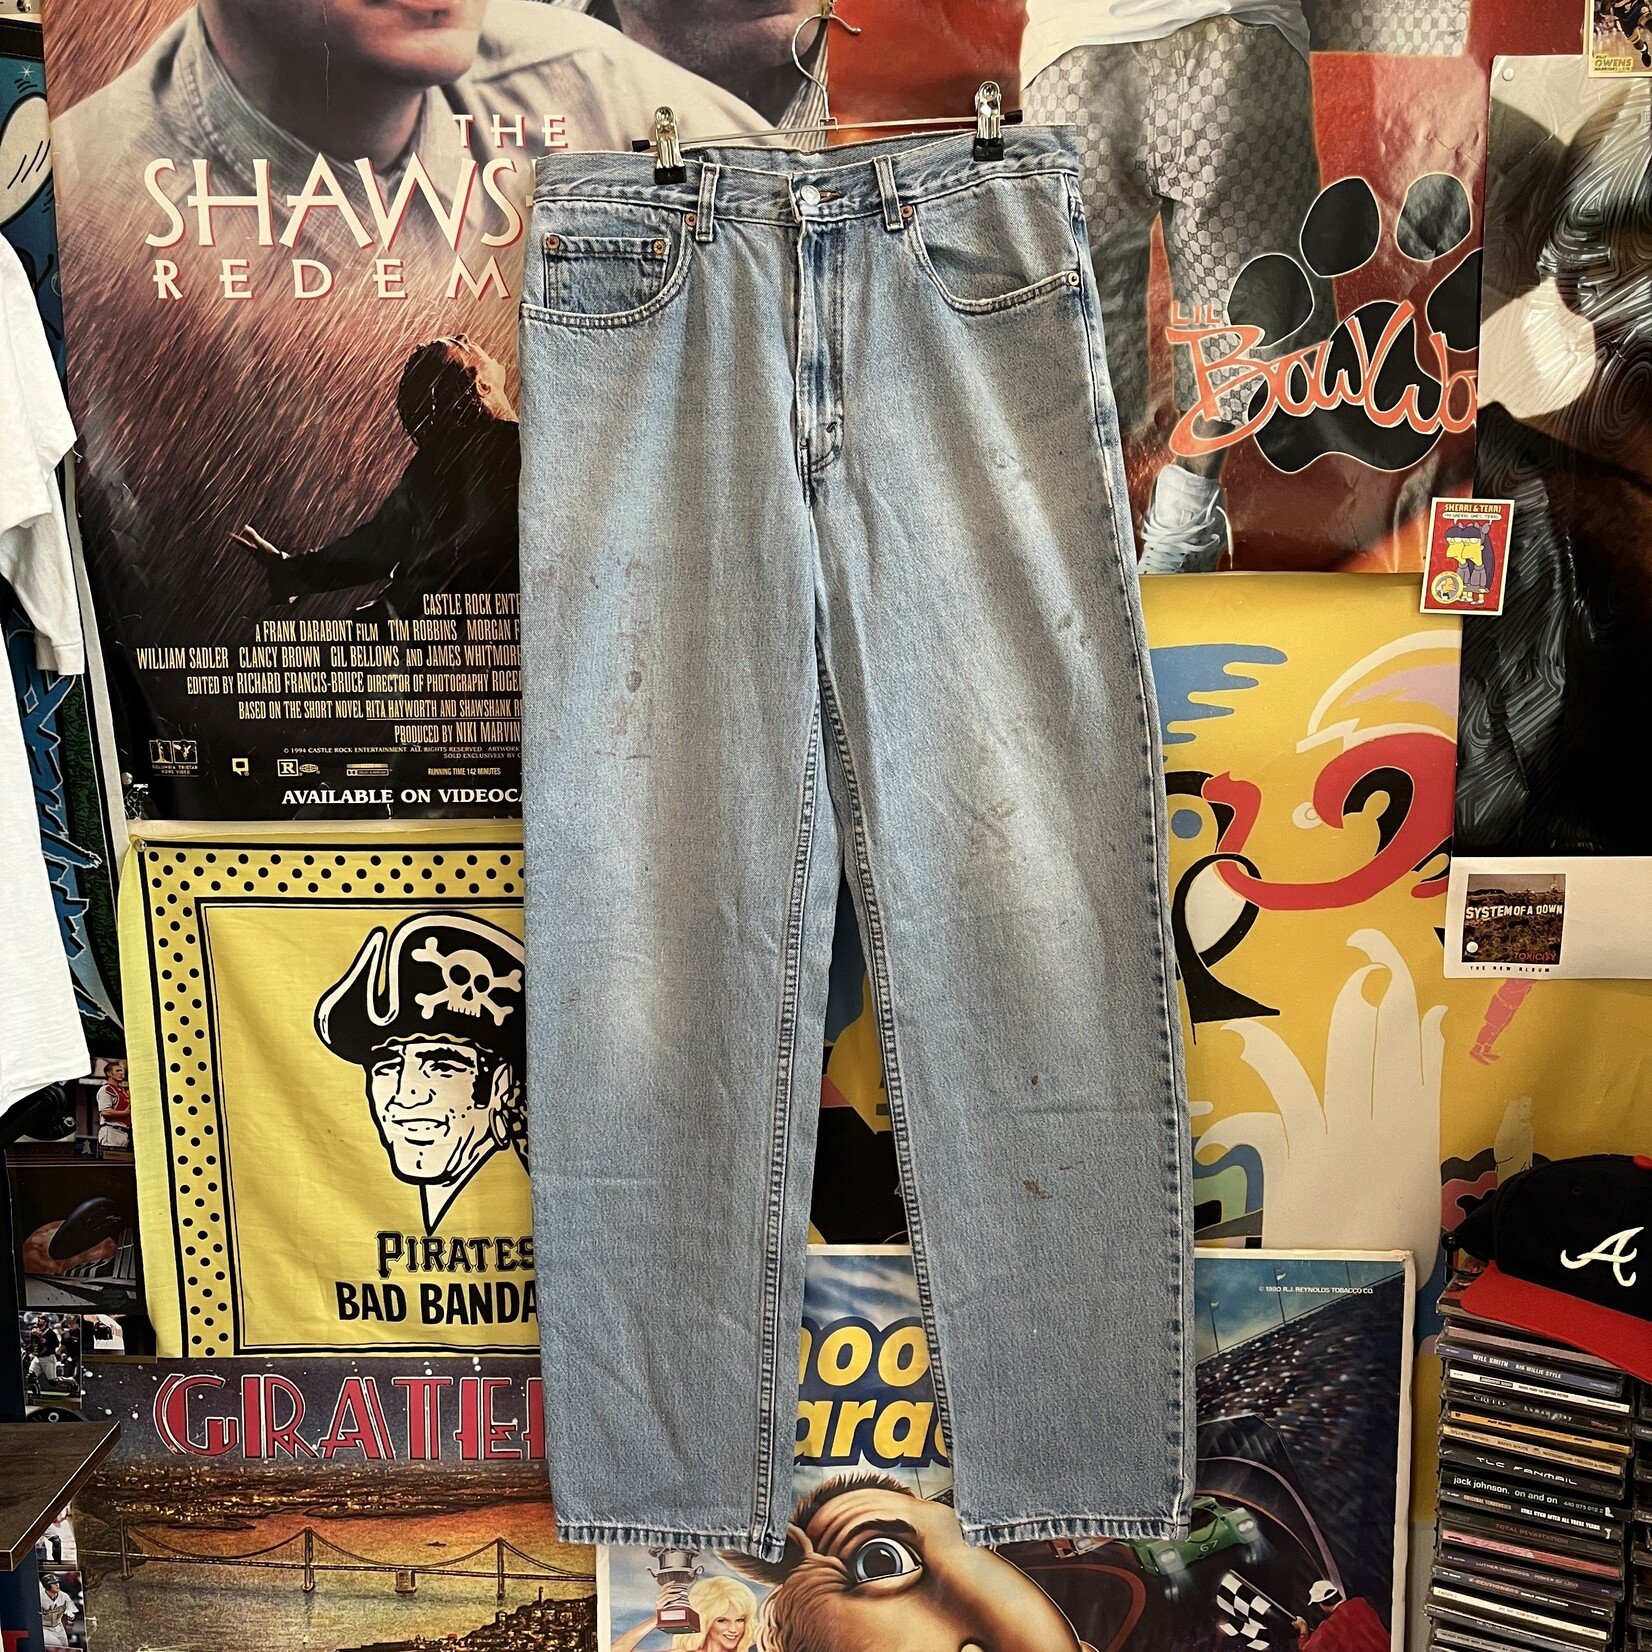 13869	2001 levi's 550 jeans sz 34 x 34